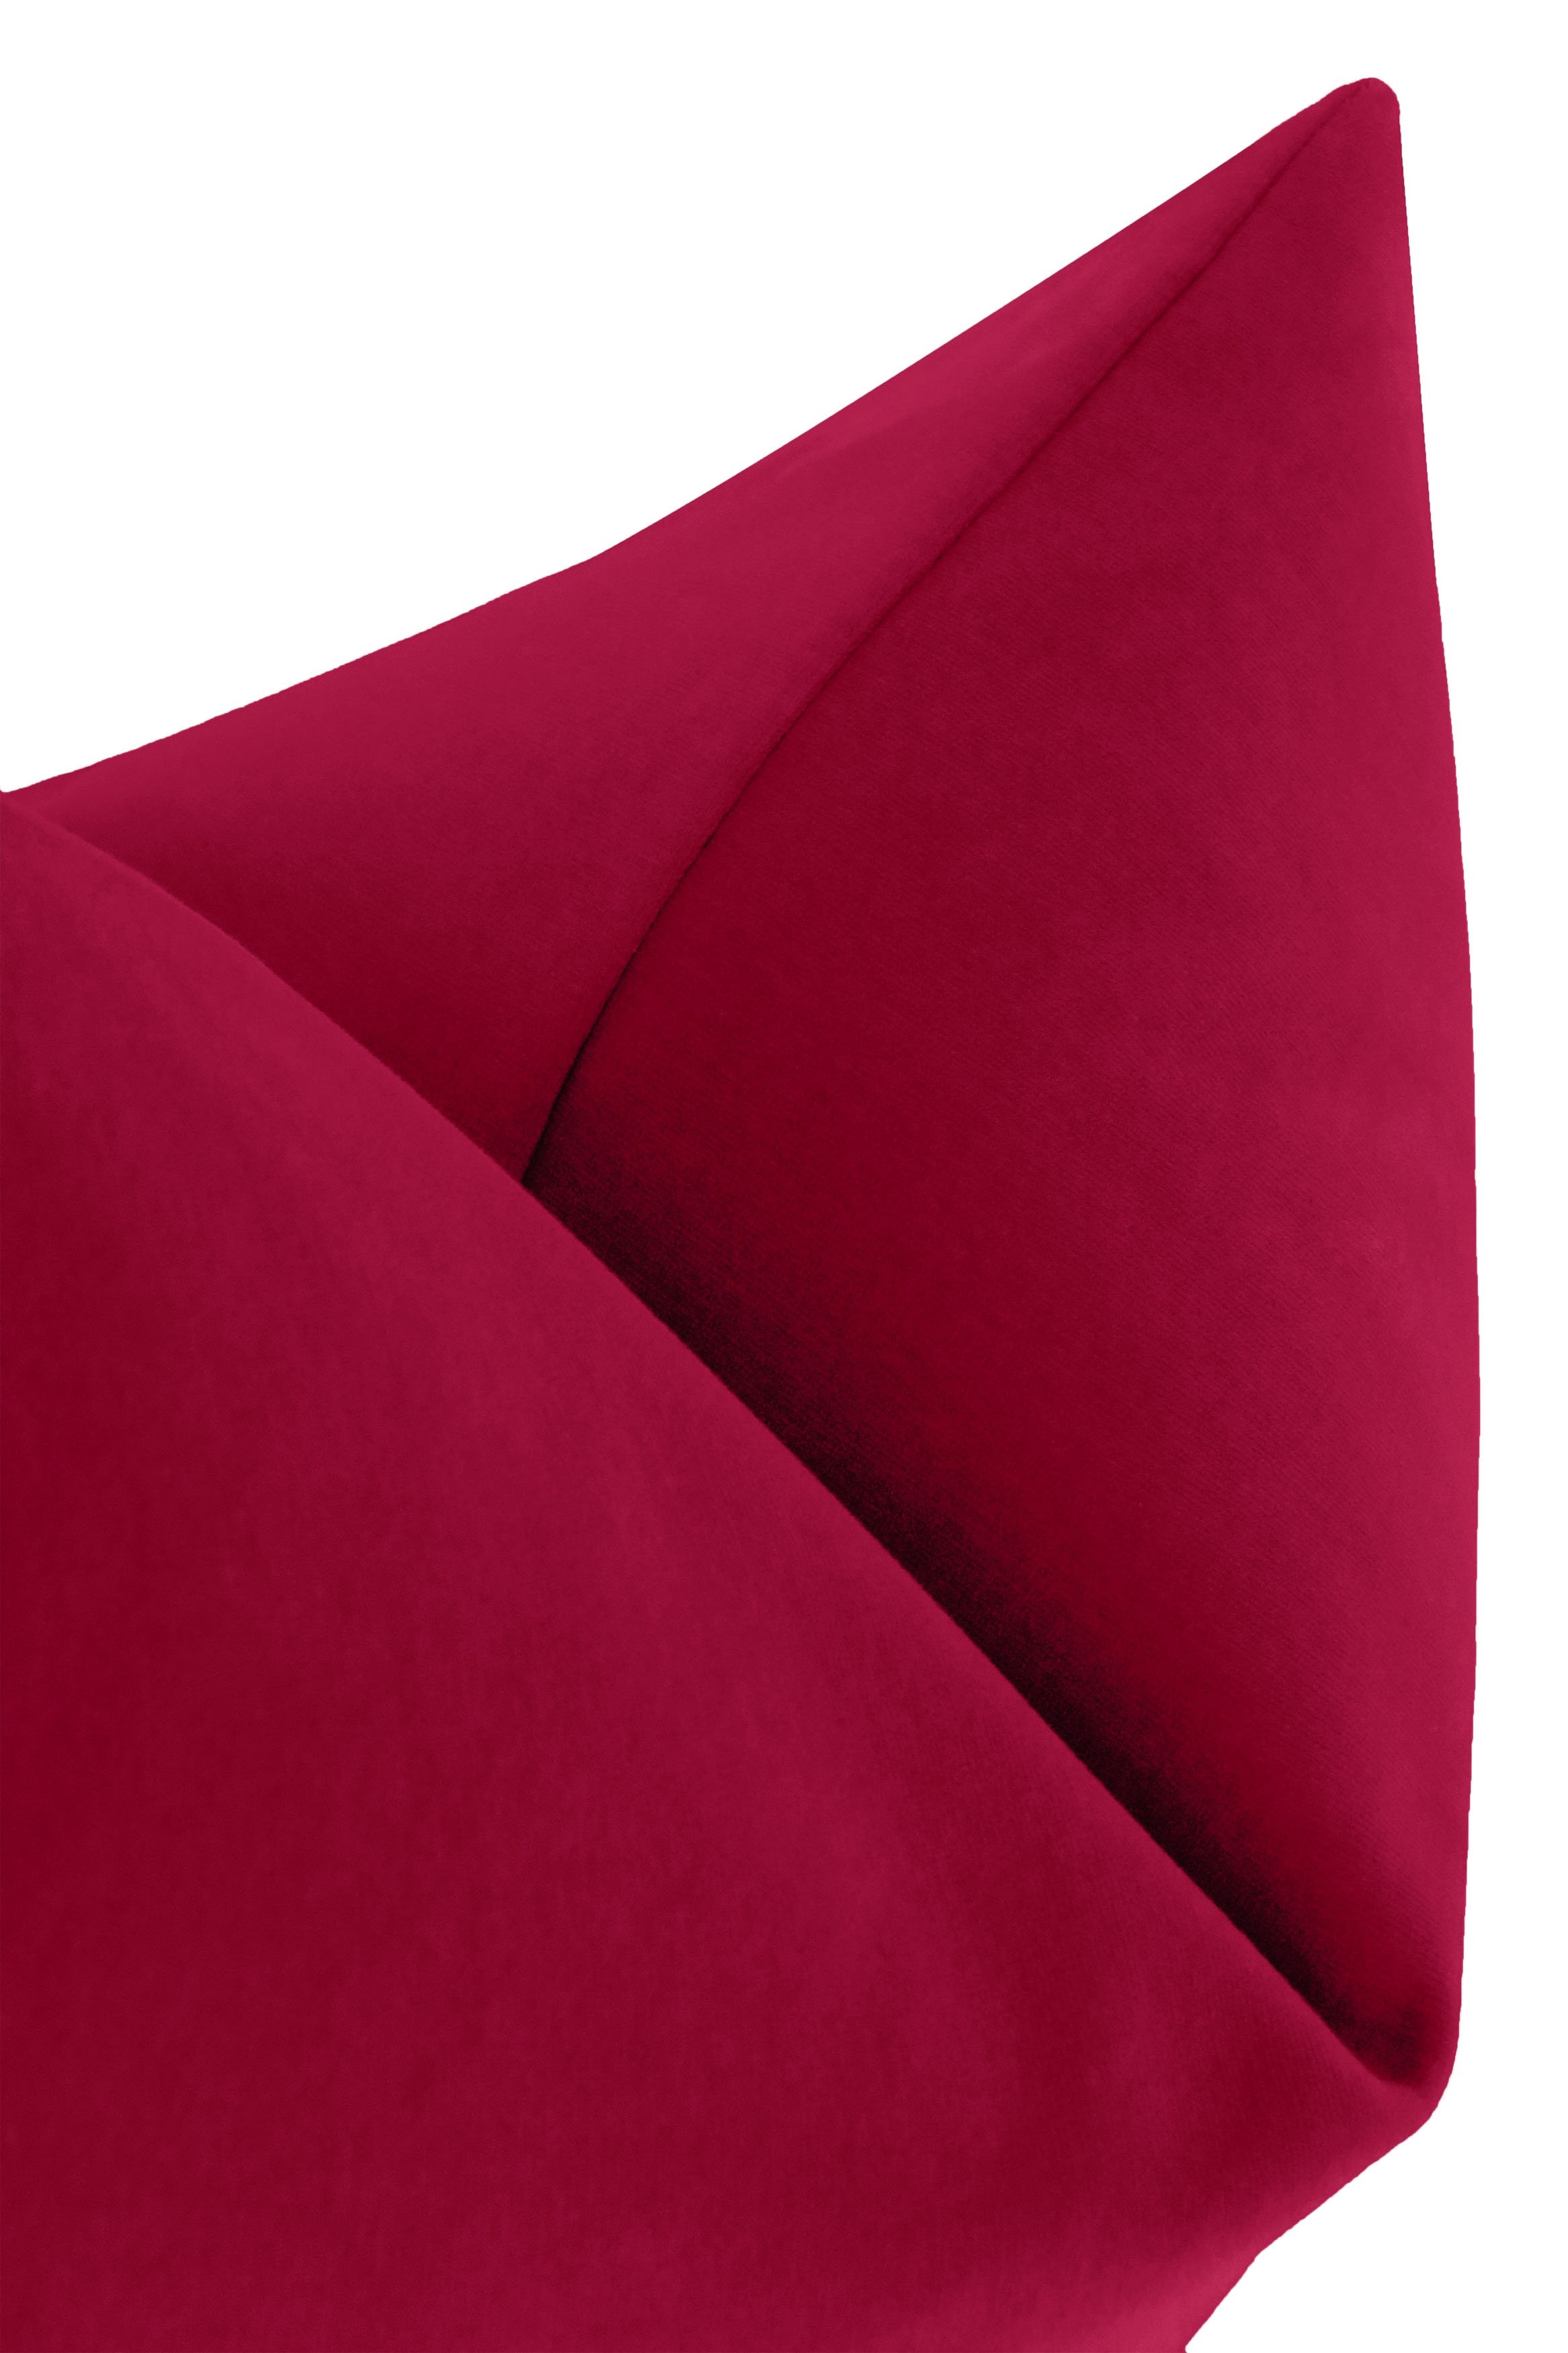 Studio Velvet Pillow Cover, Magenta, 20" x 20" - Image 1